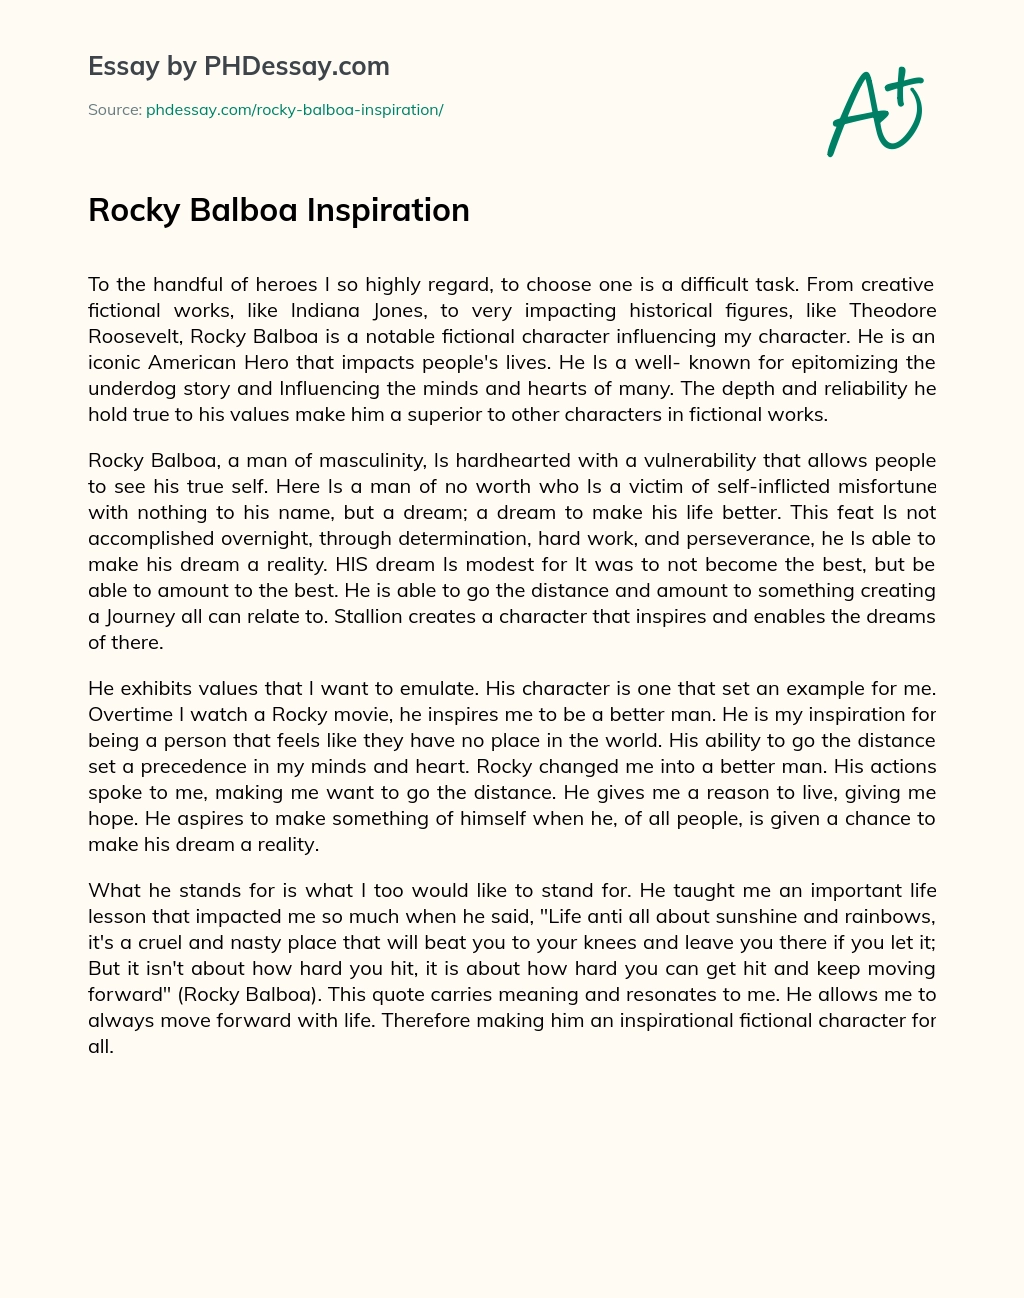 Rocky Balboa Inspiration essay